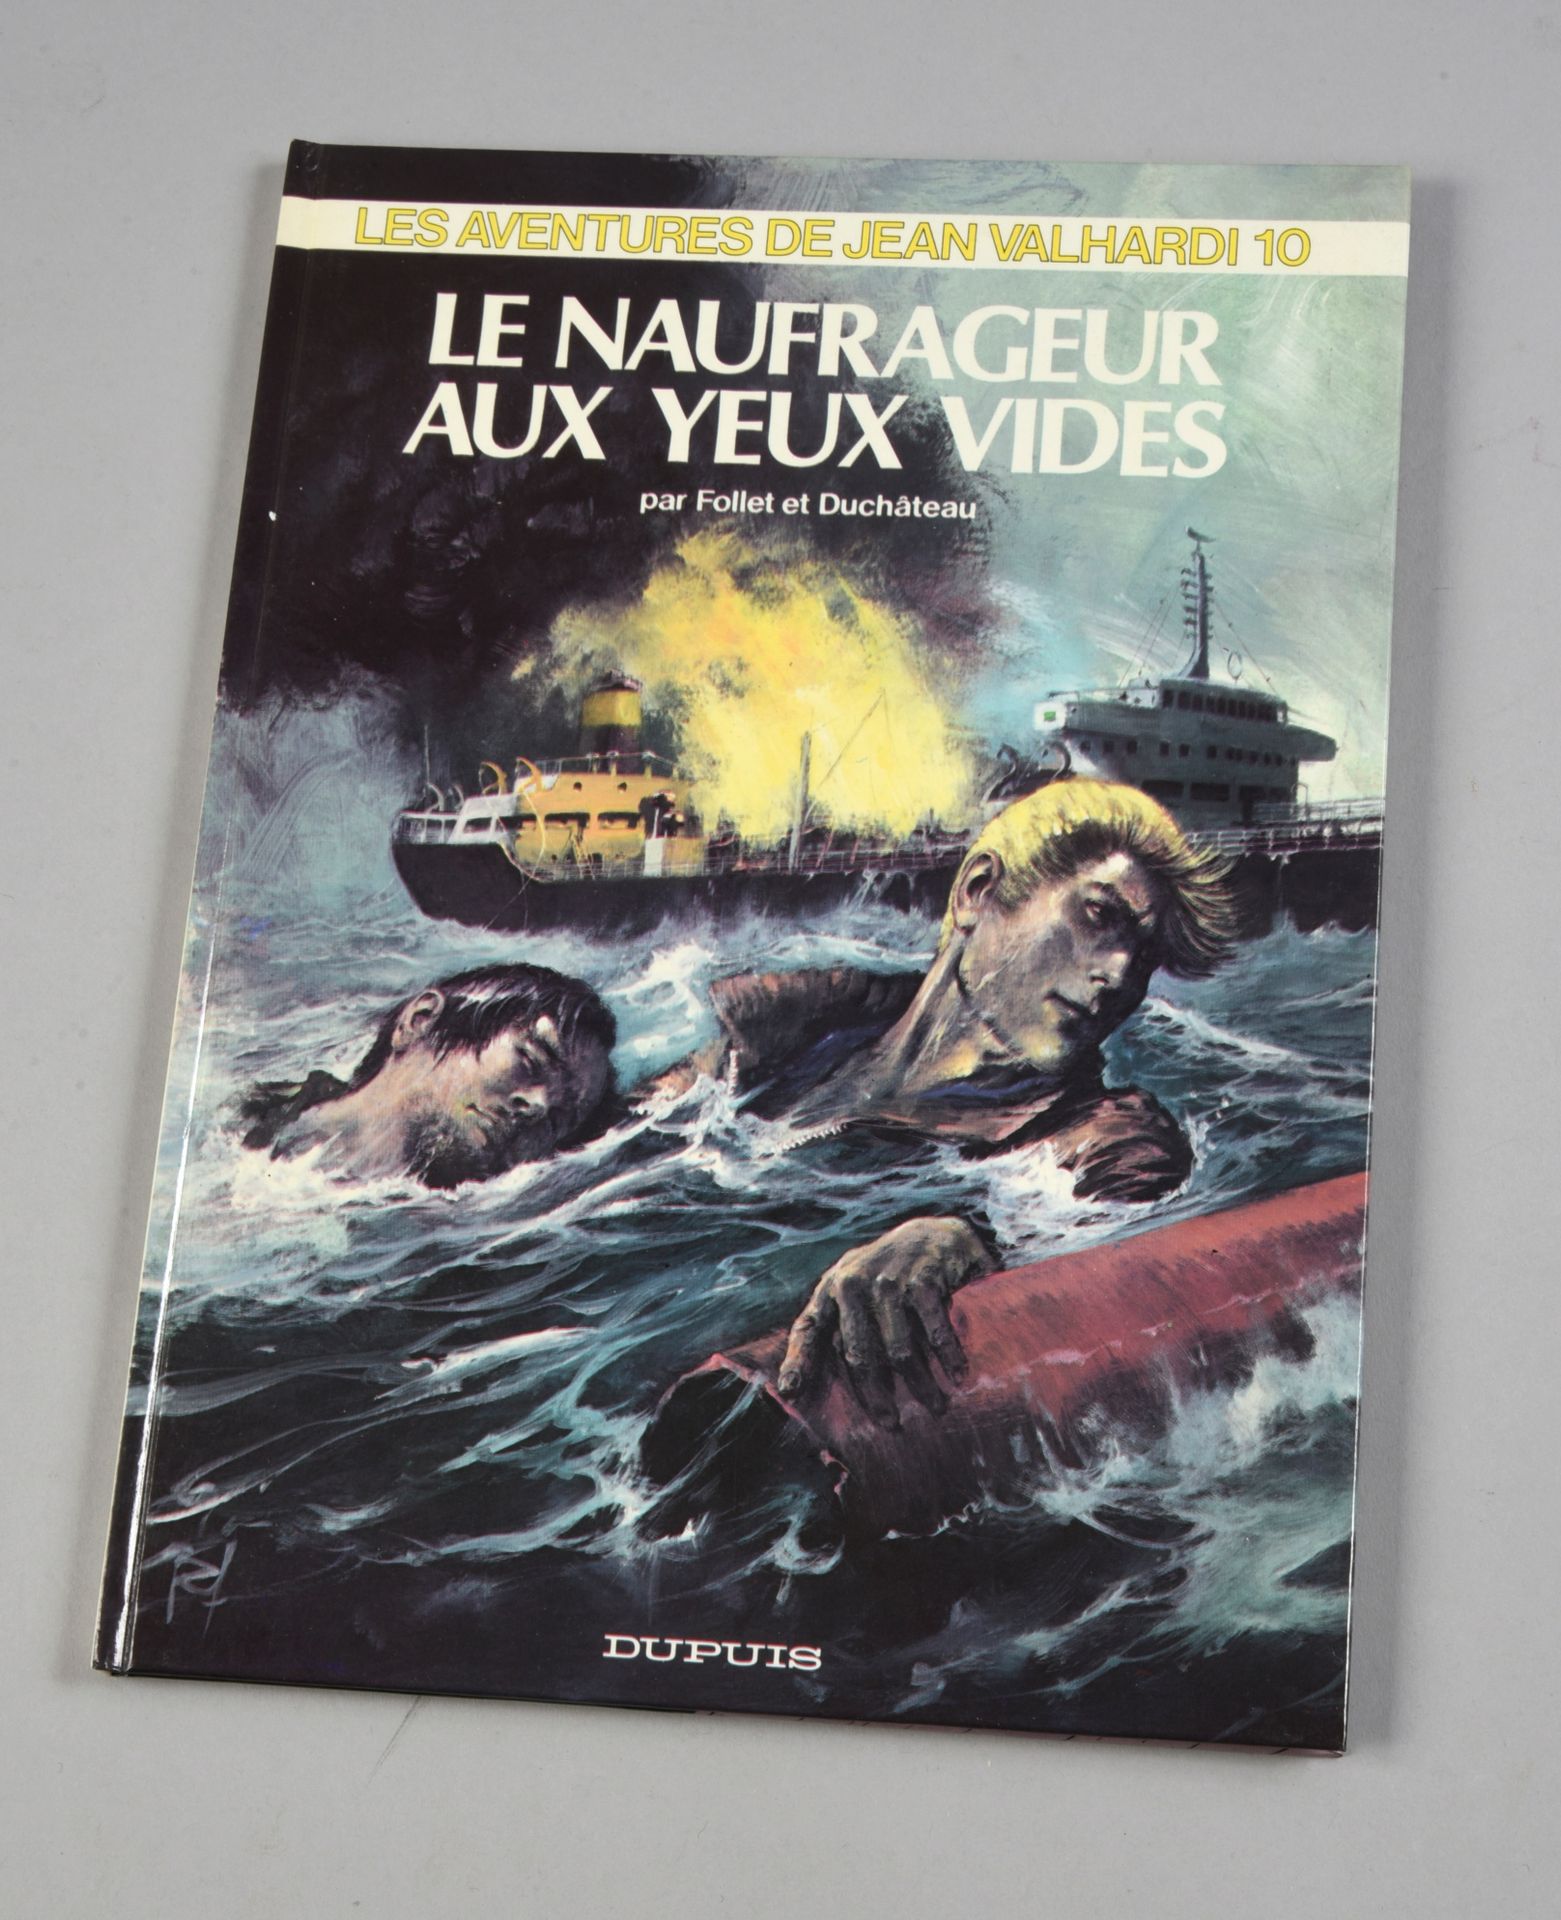 FOLLET Jean Valhardi. LES NAUFRAGEURS AUX YEUX VIDES. First edition Dupuis 1974,&hellip;